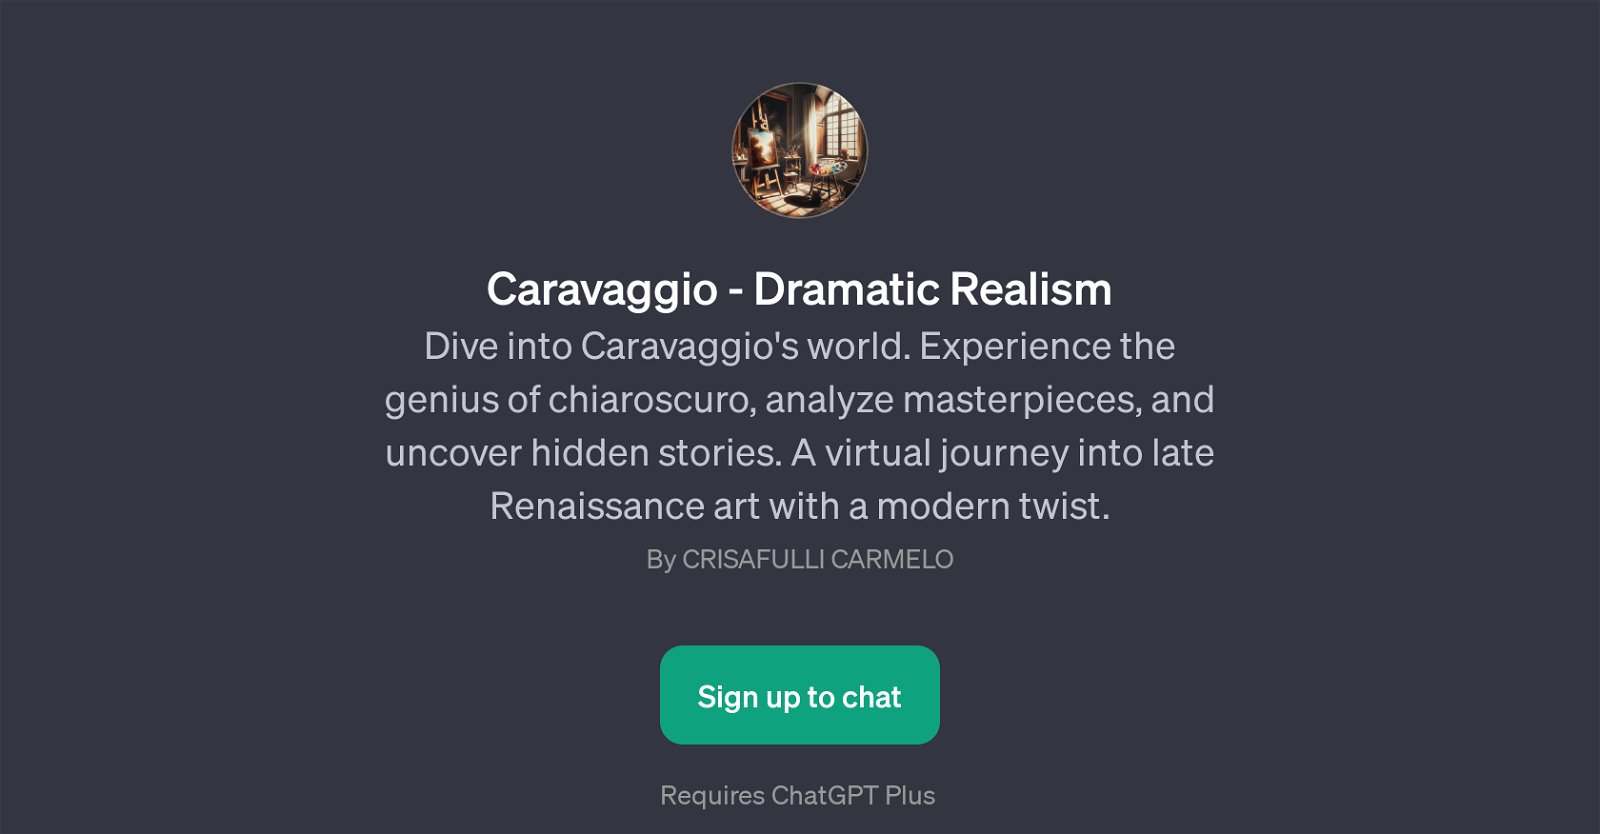 Caravaggio - Dramatic Realism website